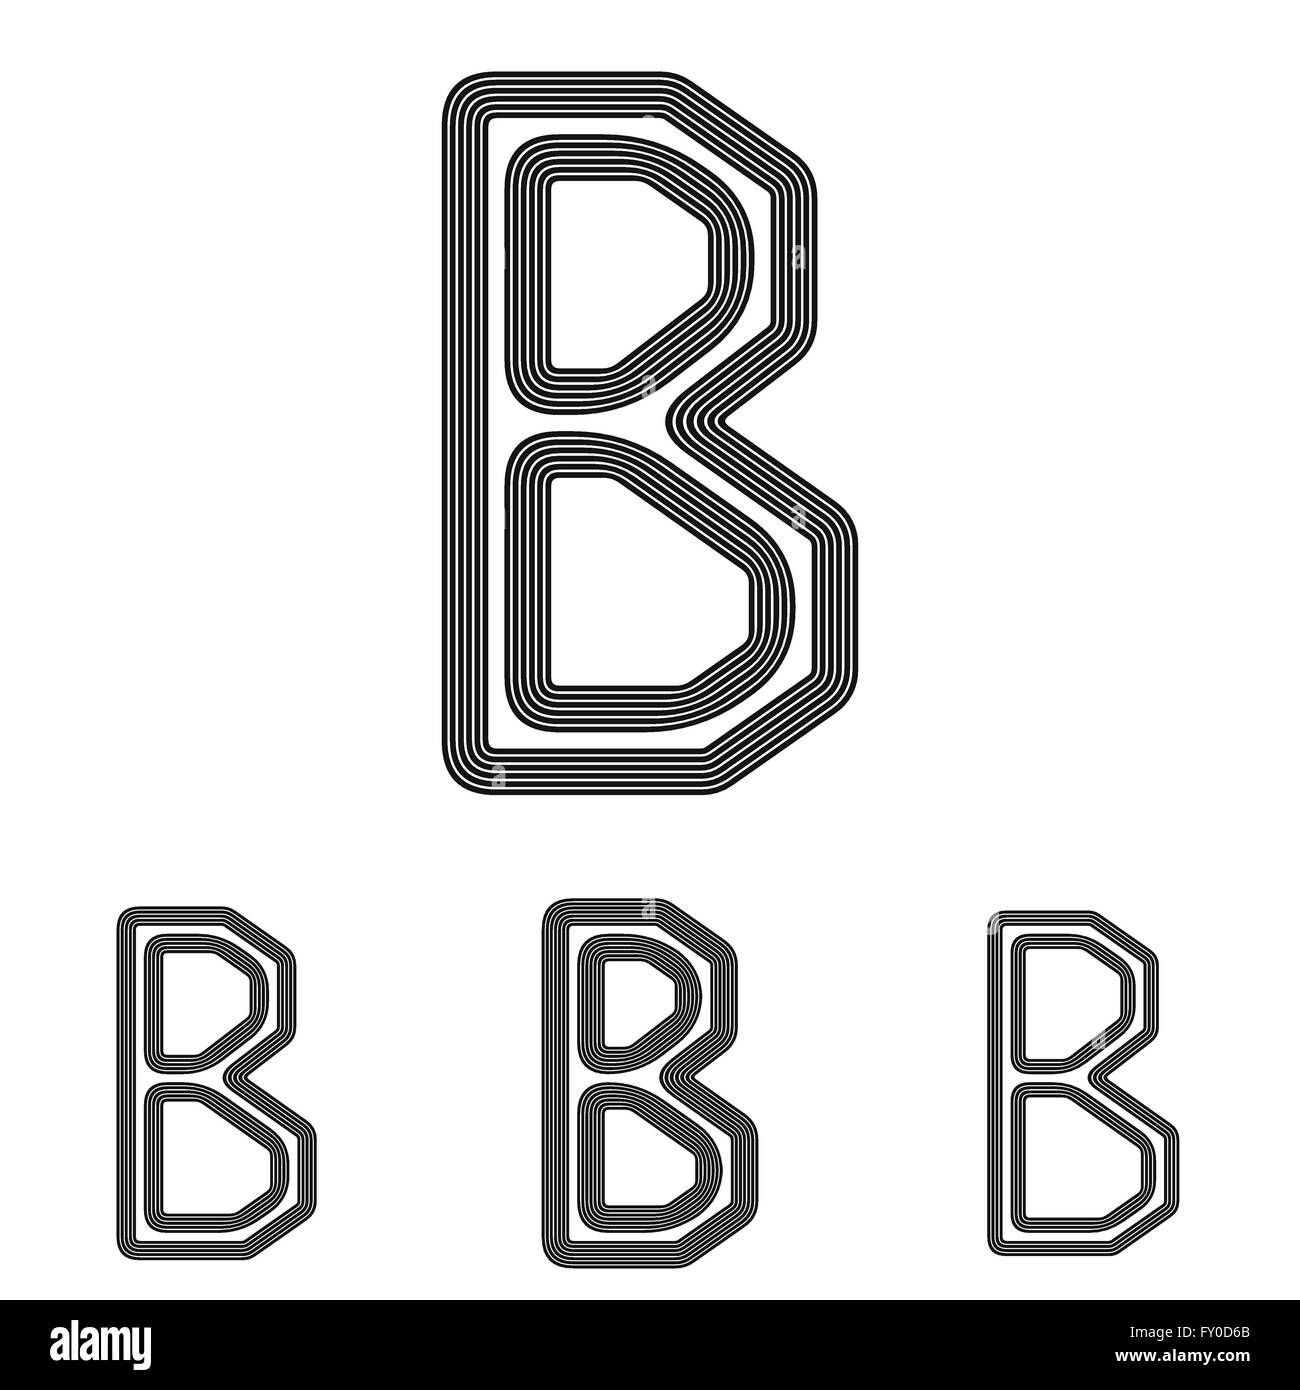 Black b letter logo design set Stock Vector